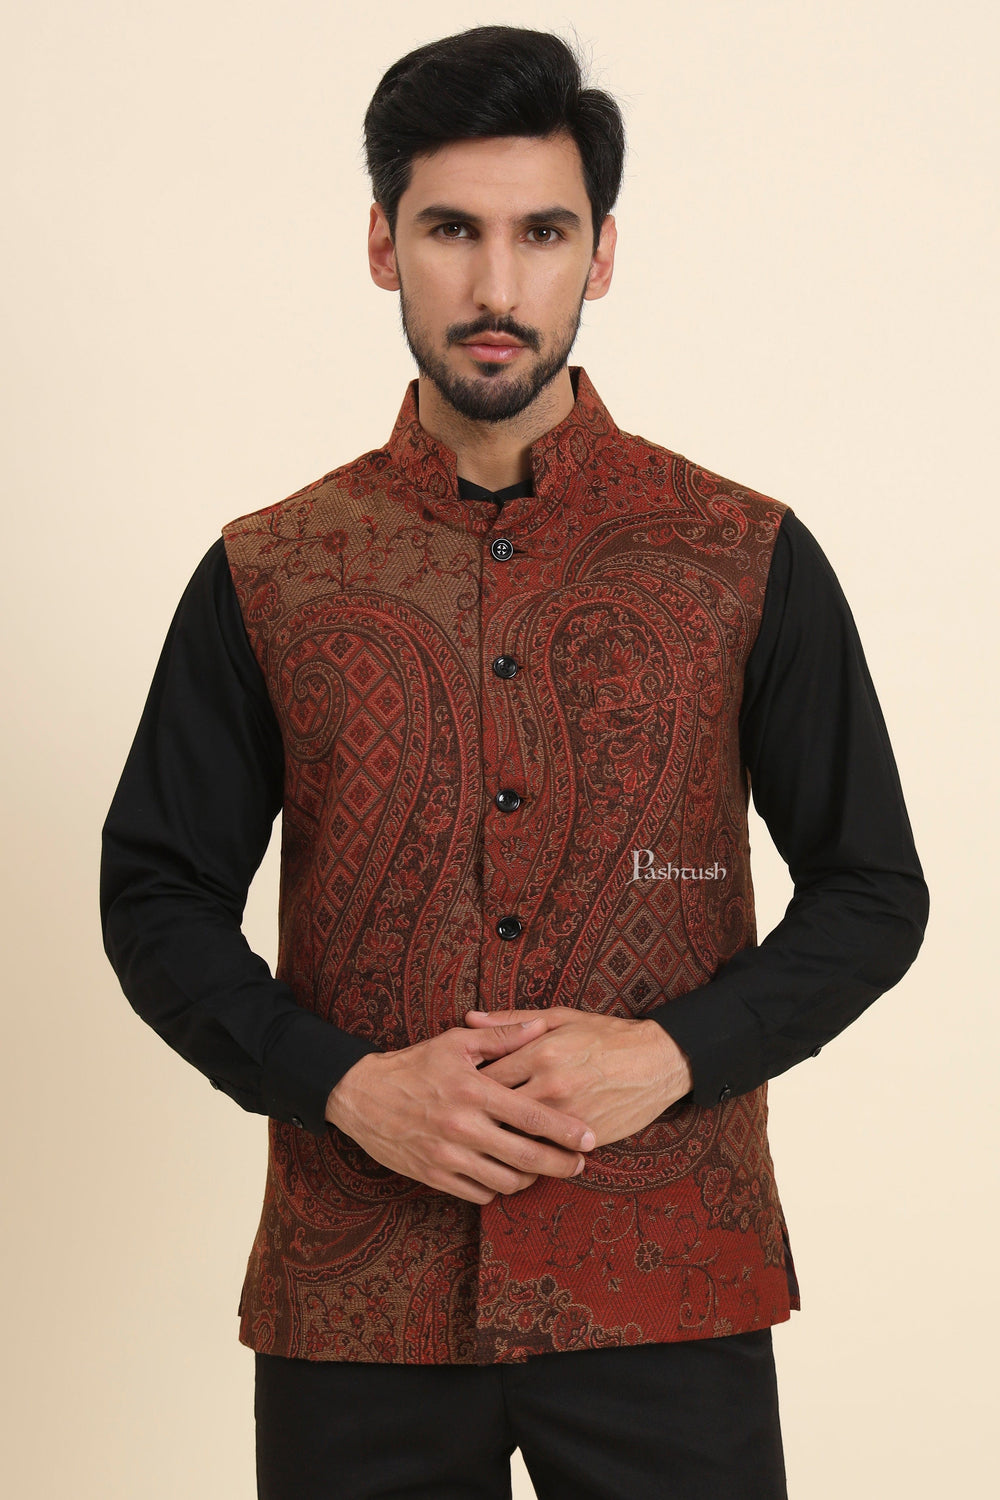 Pashtush India Coats & Jackets Pashtush Mens Woven Jacquard Waistcoat, Structured Slim Fit, Brown